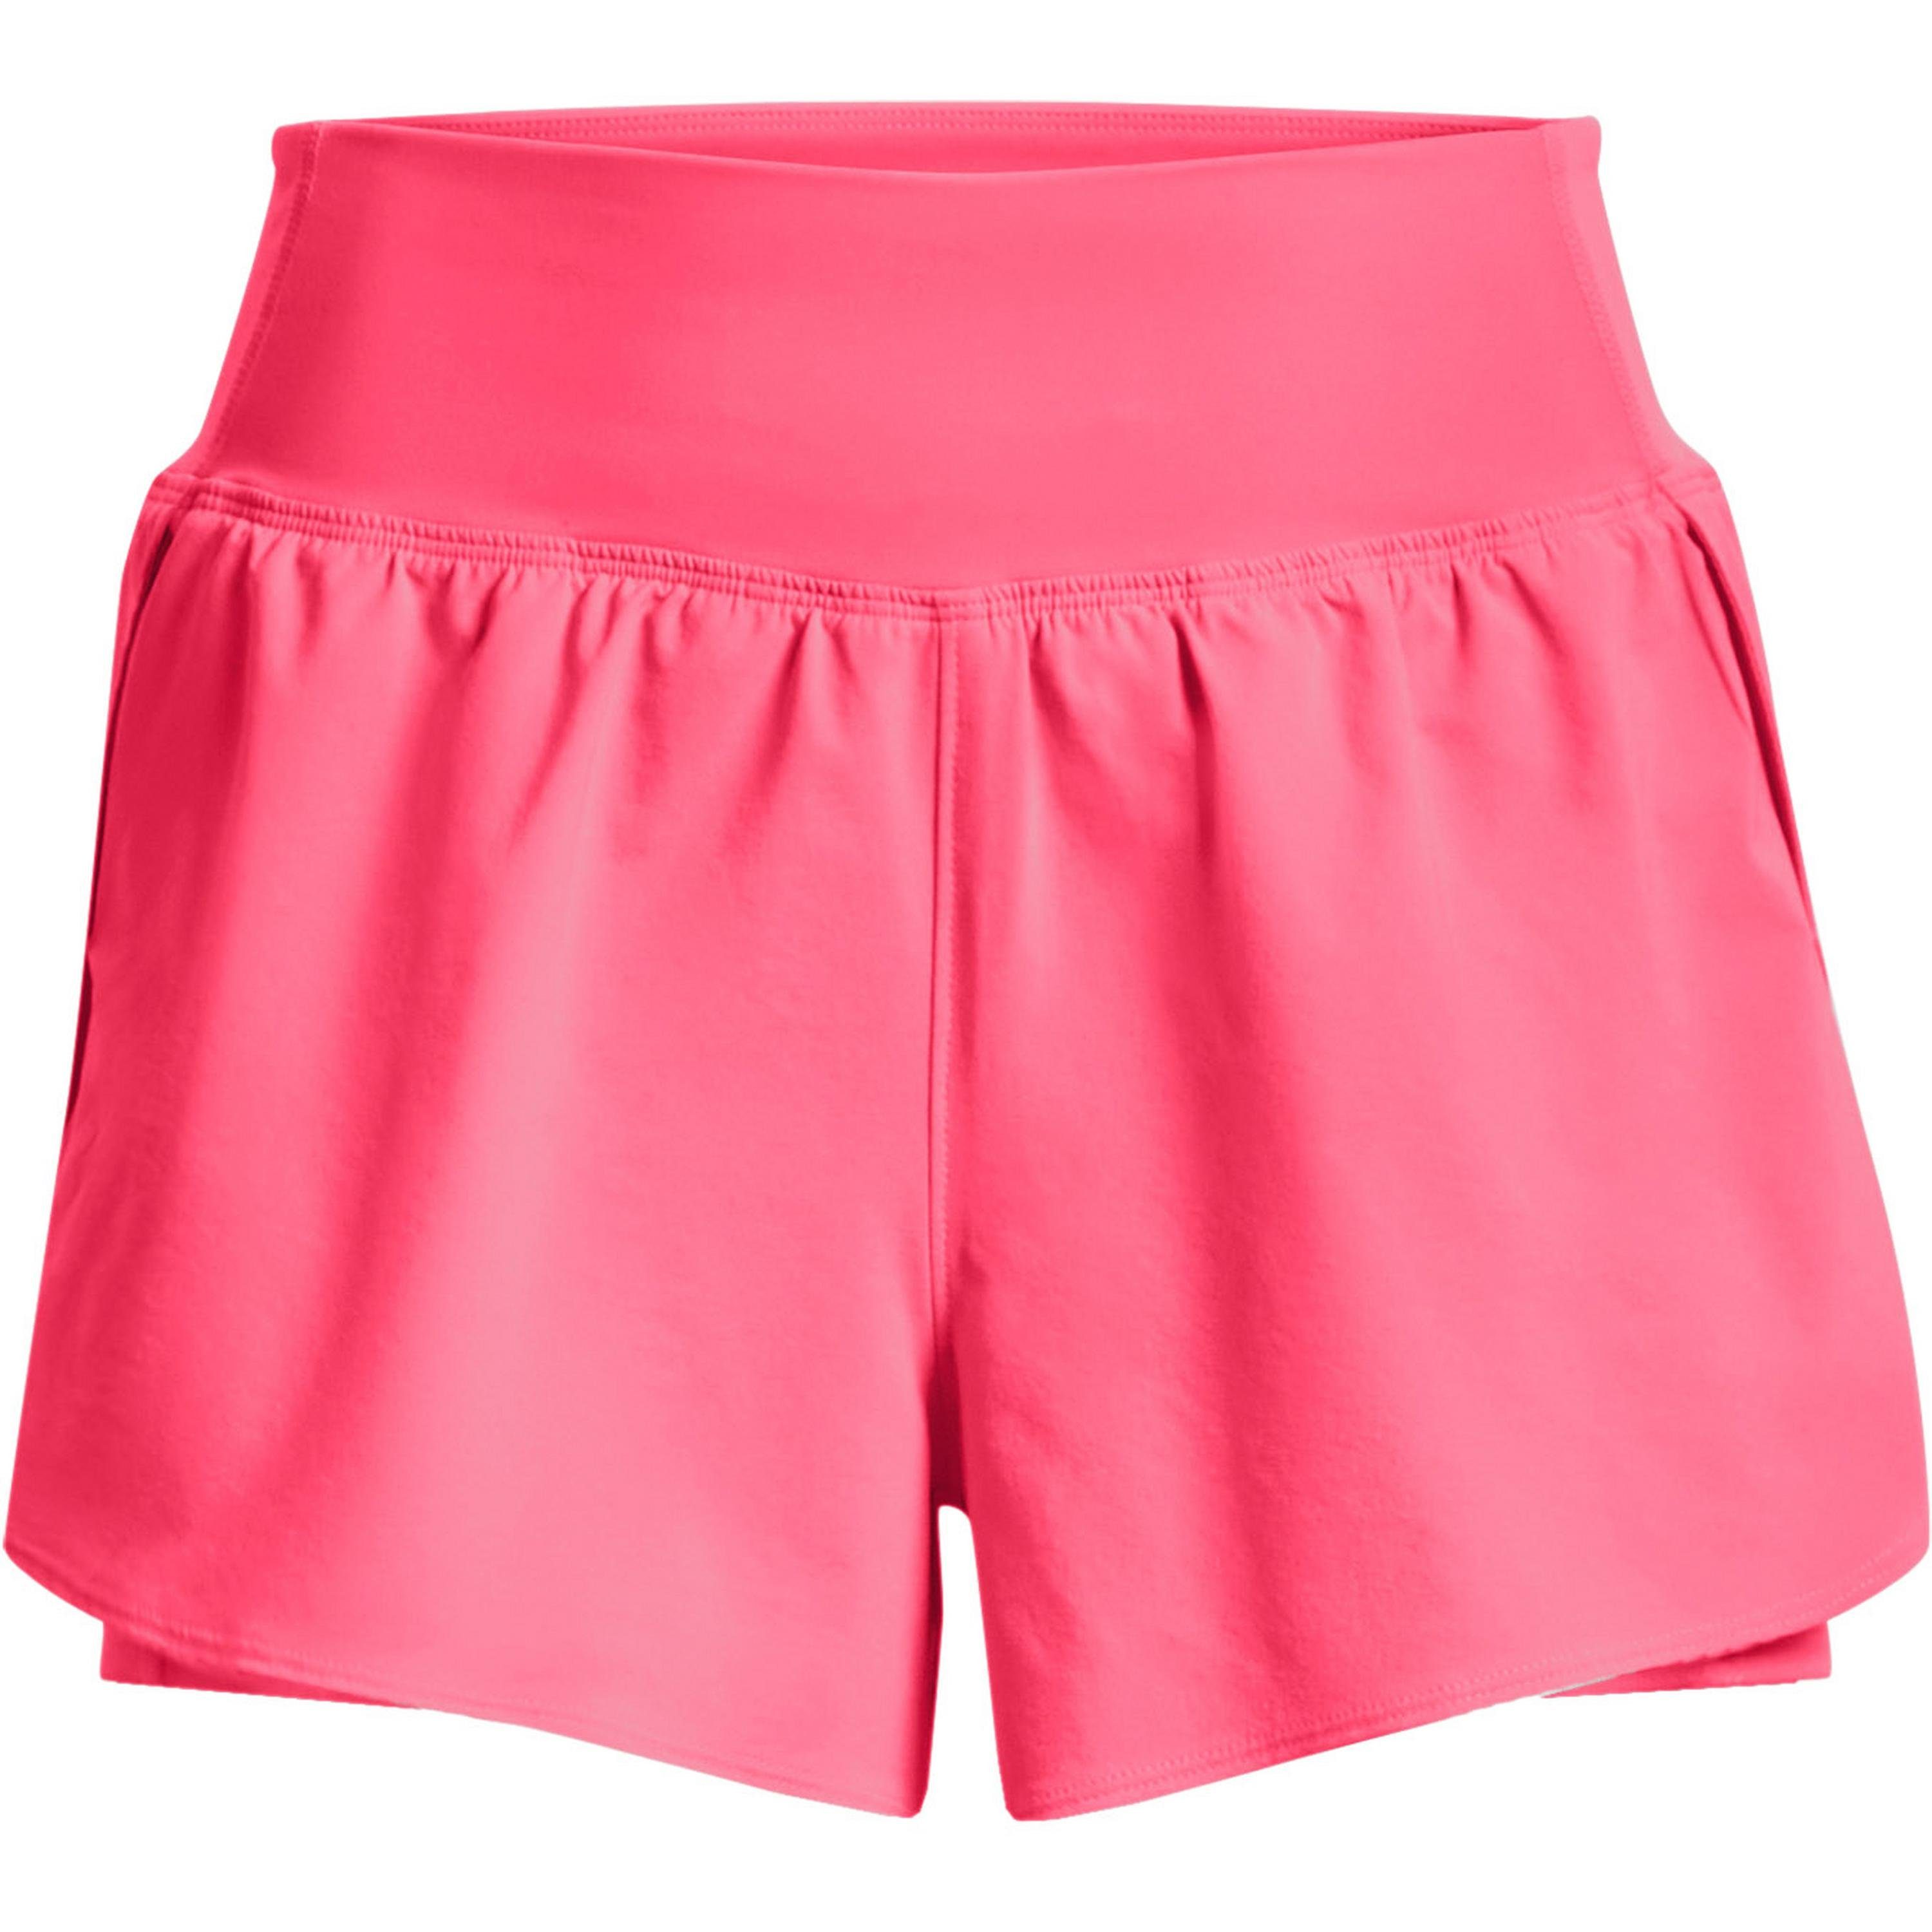 Rosa sportliche Shorts für Damen online kaufen | OTTO